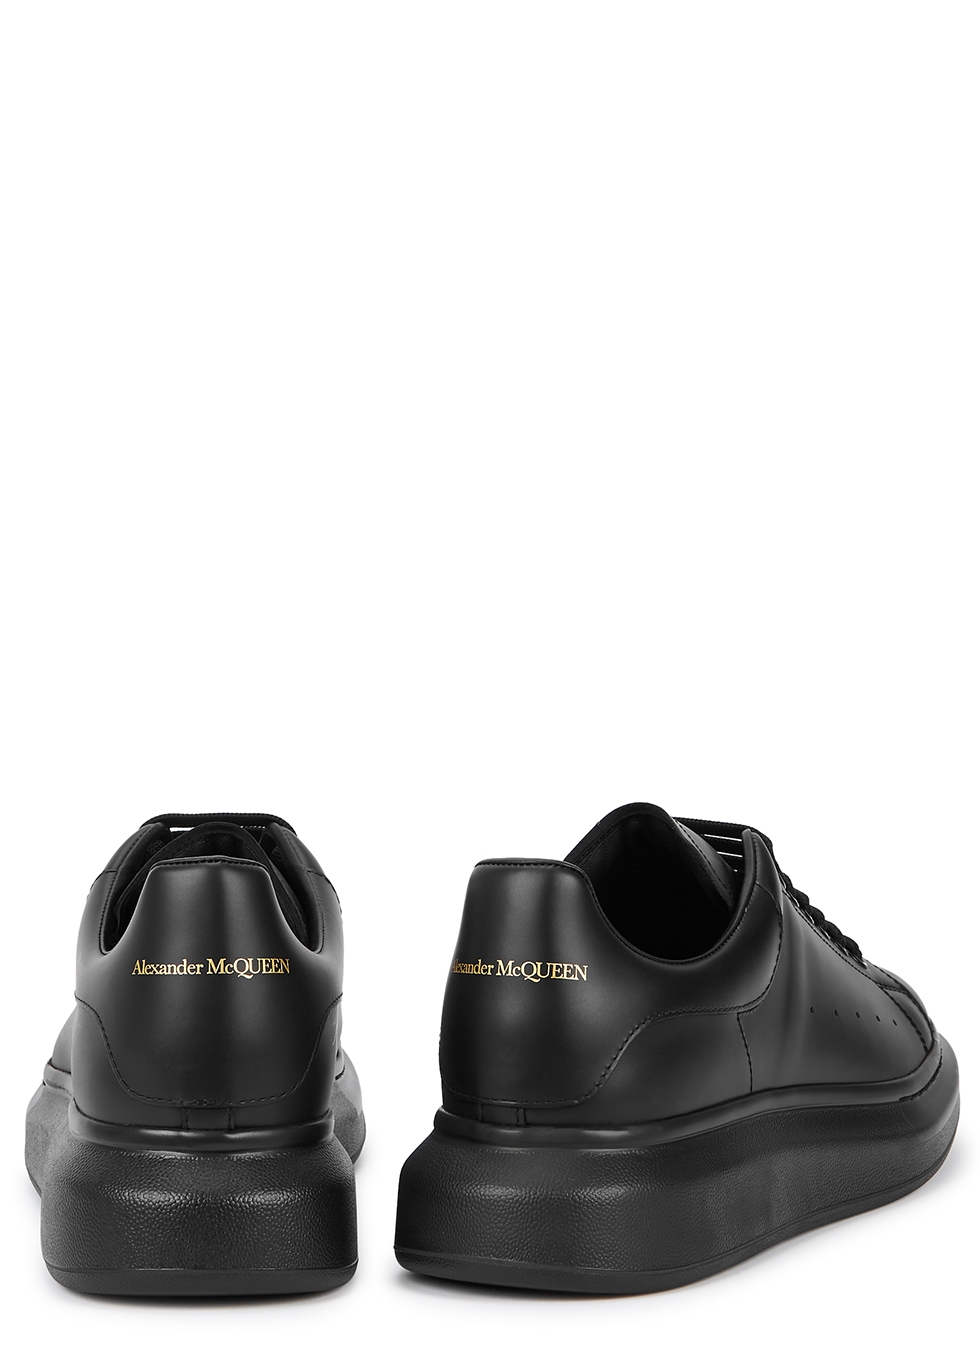 alexander mcqueen larry black leather sneakers